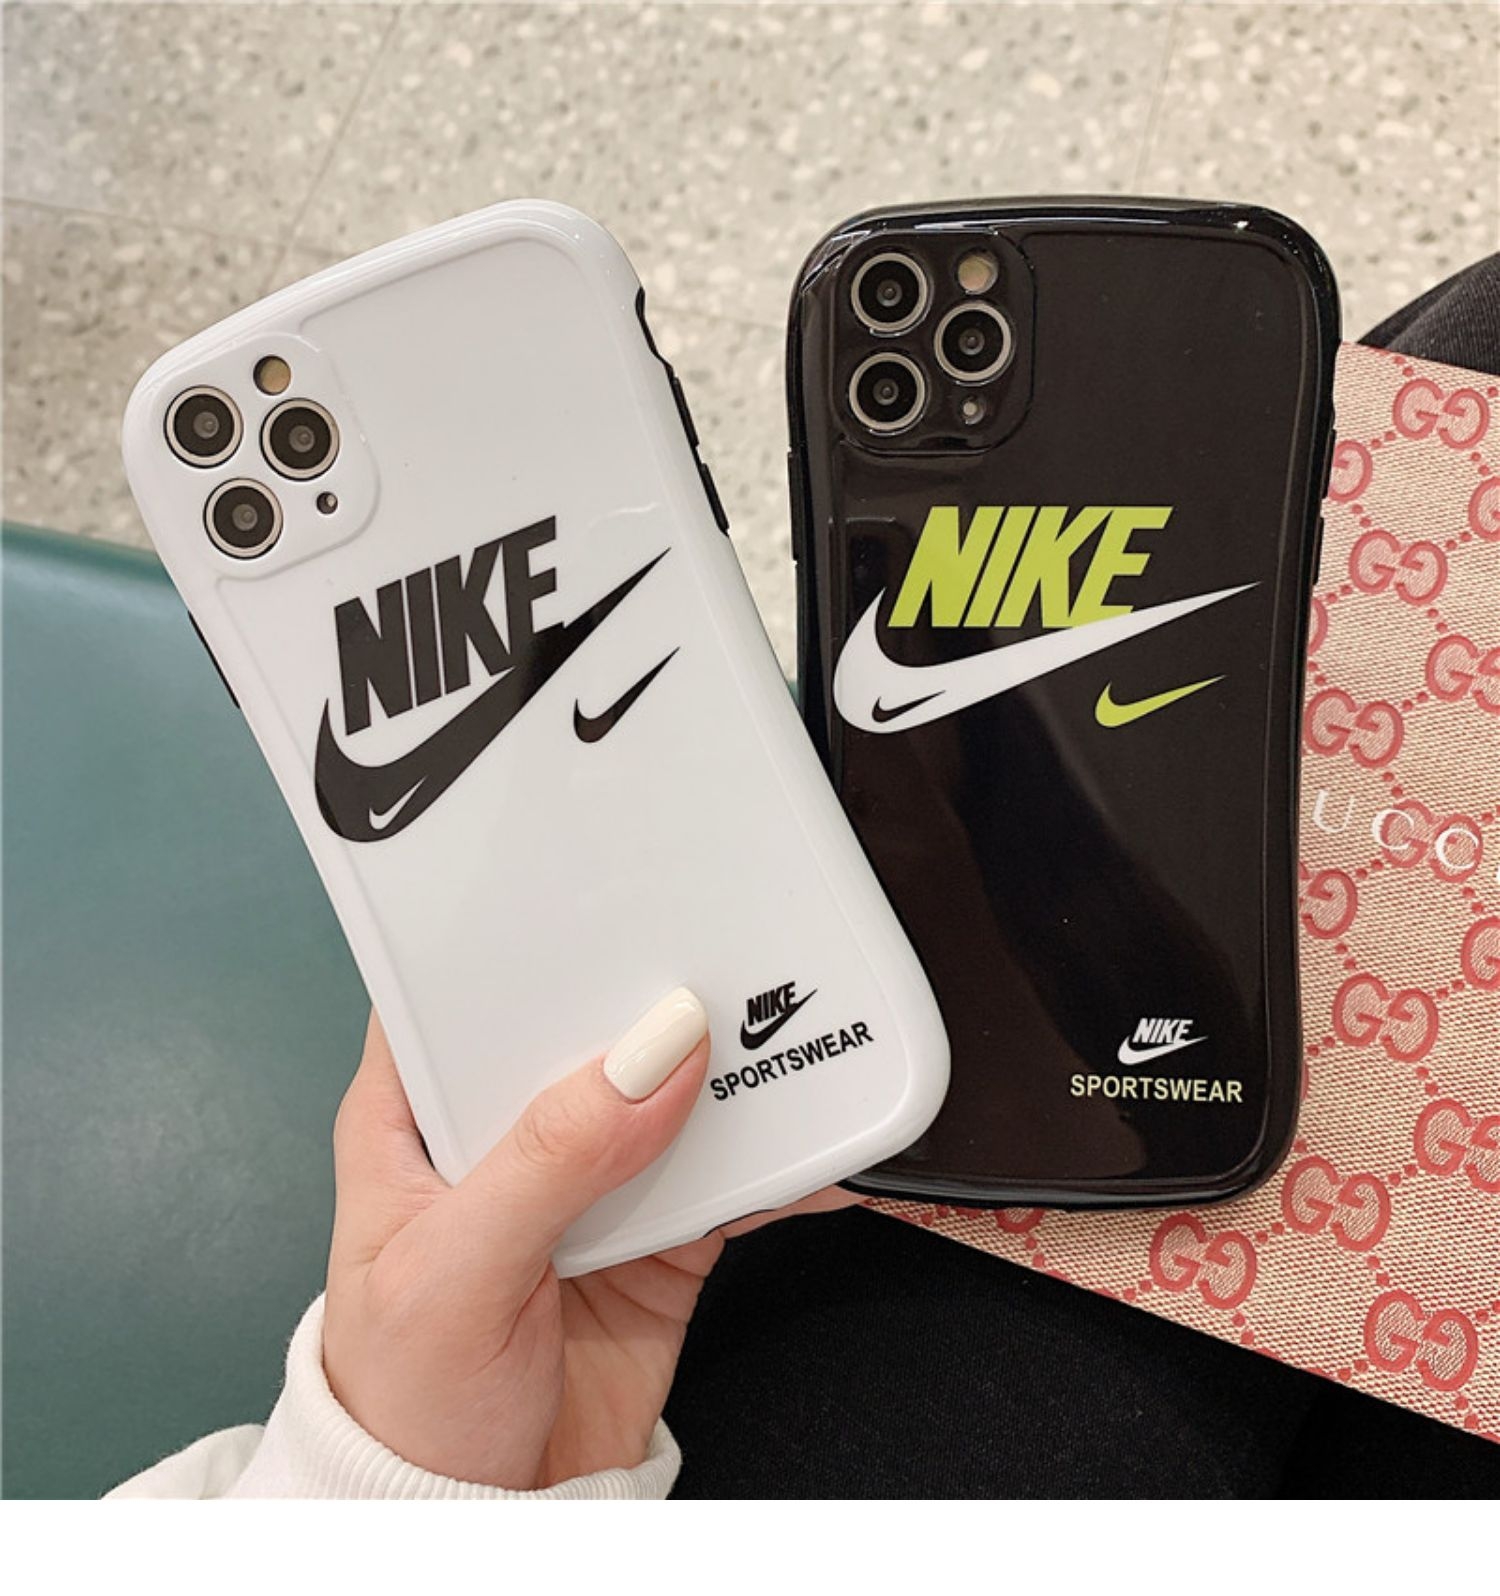 ナイキ アイフォン12Pro Max/12Proケース 男女兼用 ブランド Nike iphone 12カバー ペア オシャレ